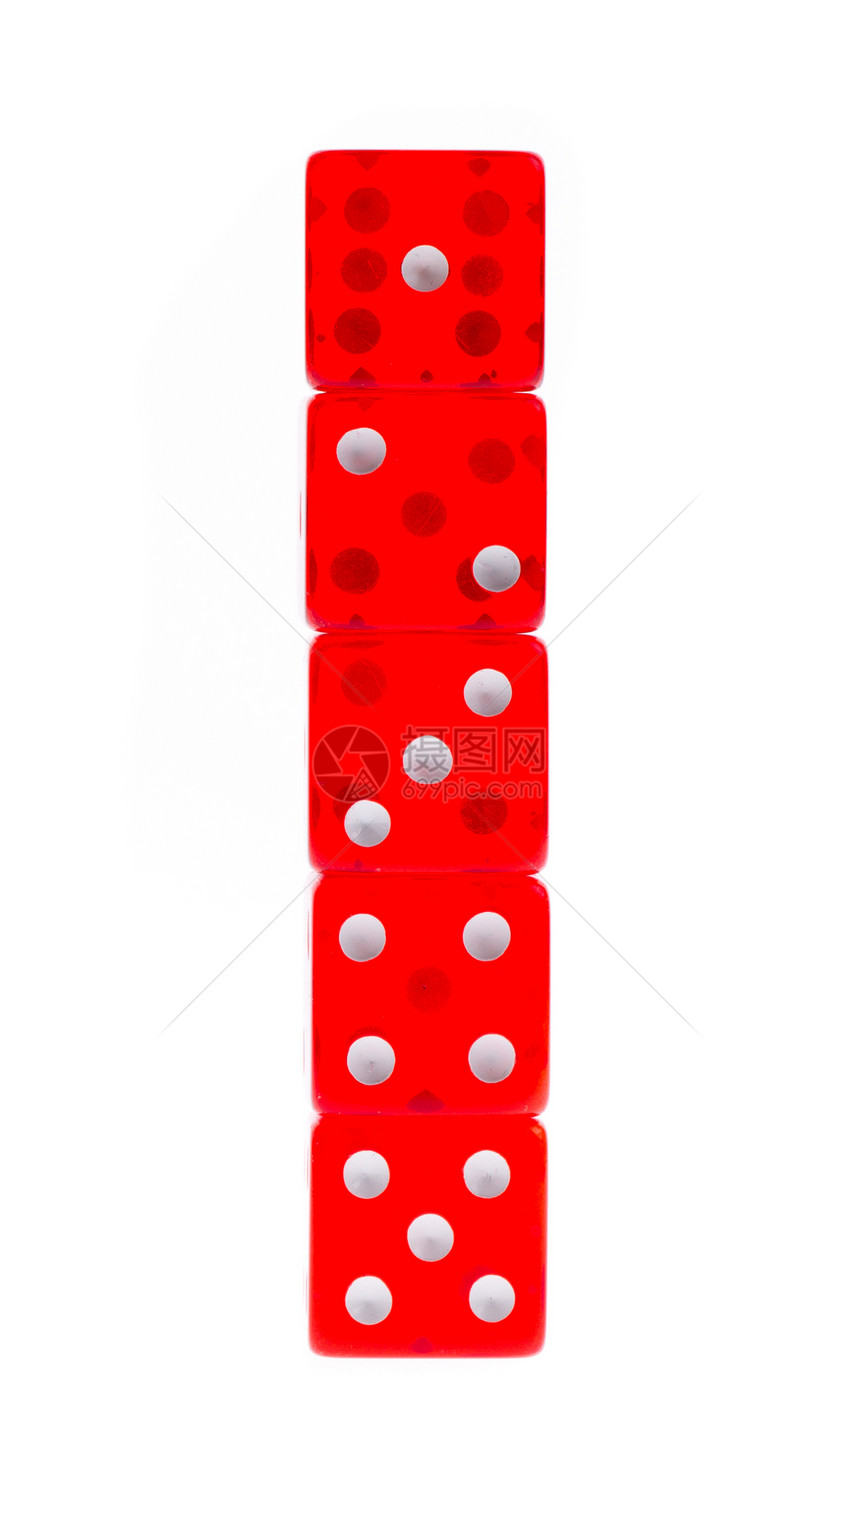 五张透明的红色红色骰子投注娱乐插图速度游戏风险白色立方体运气机会图片